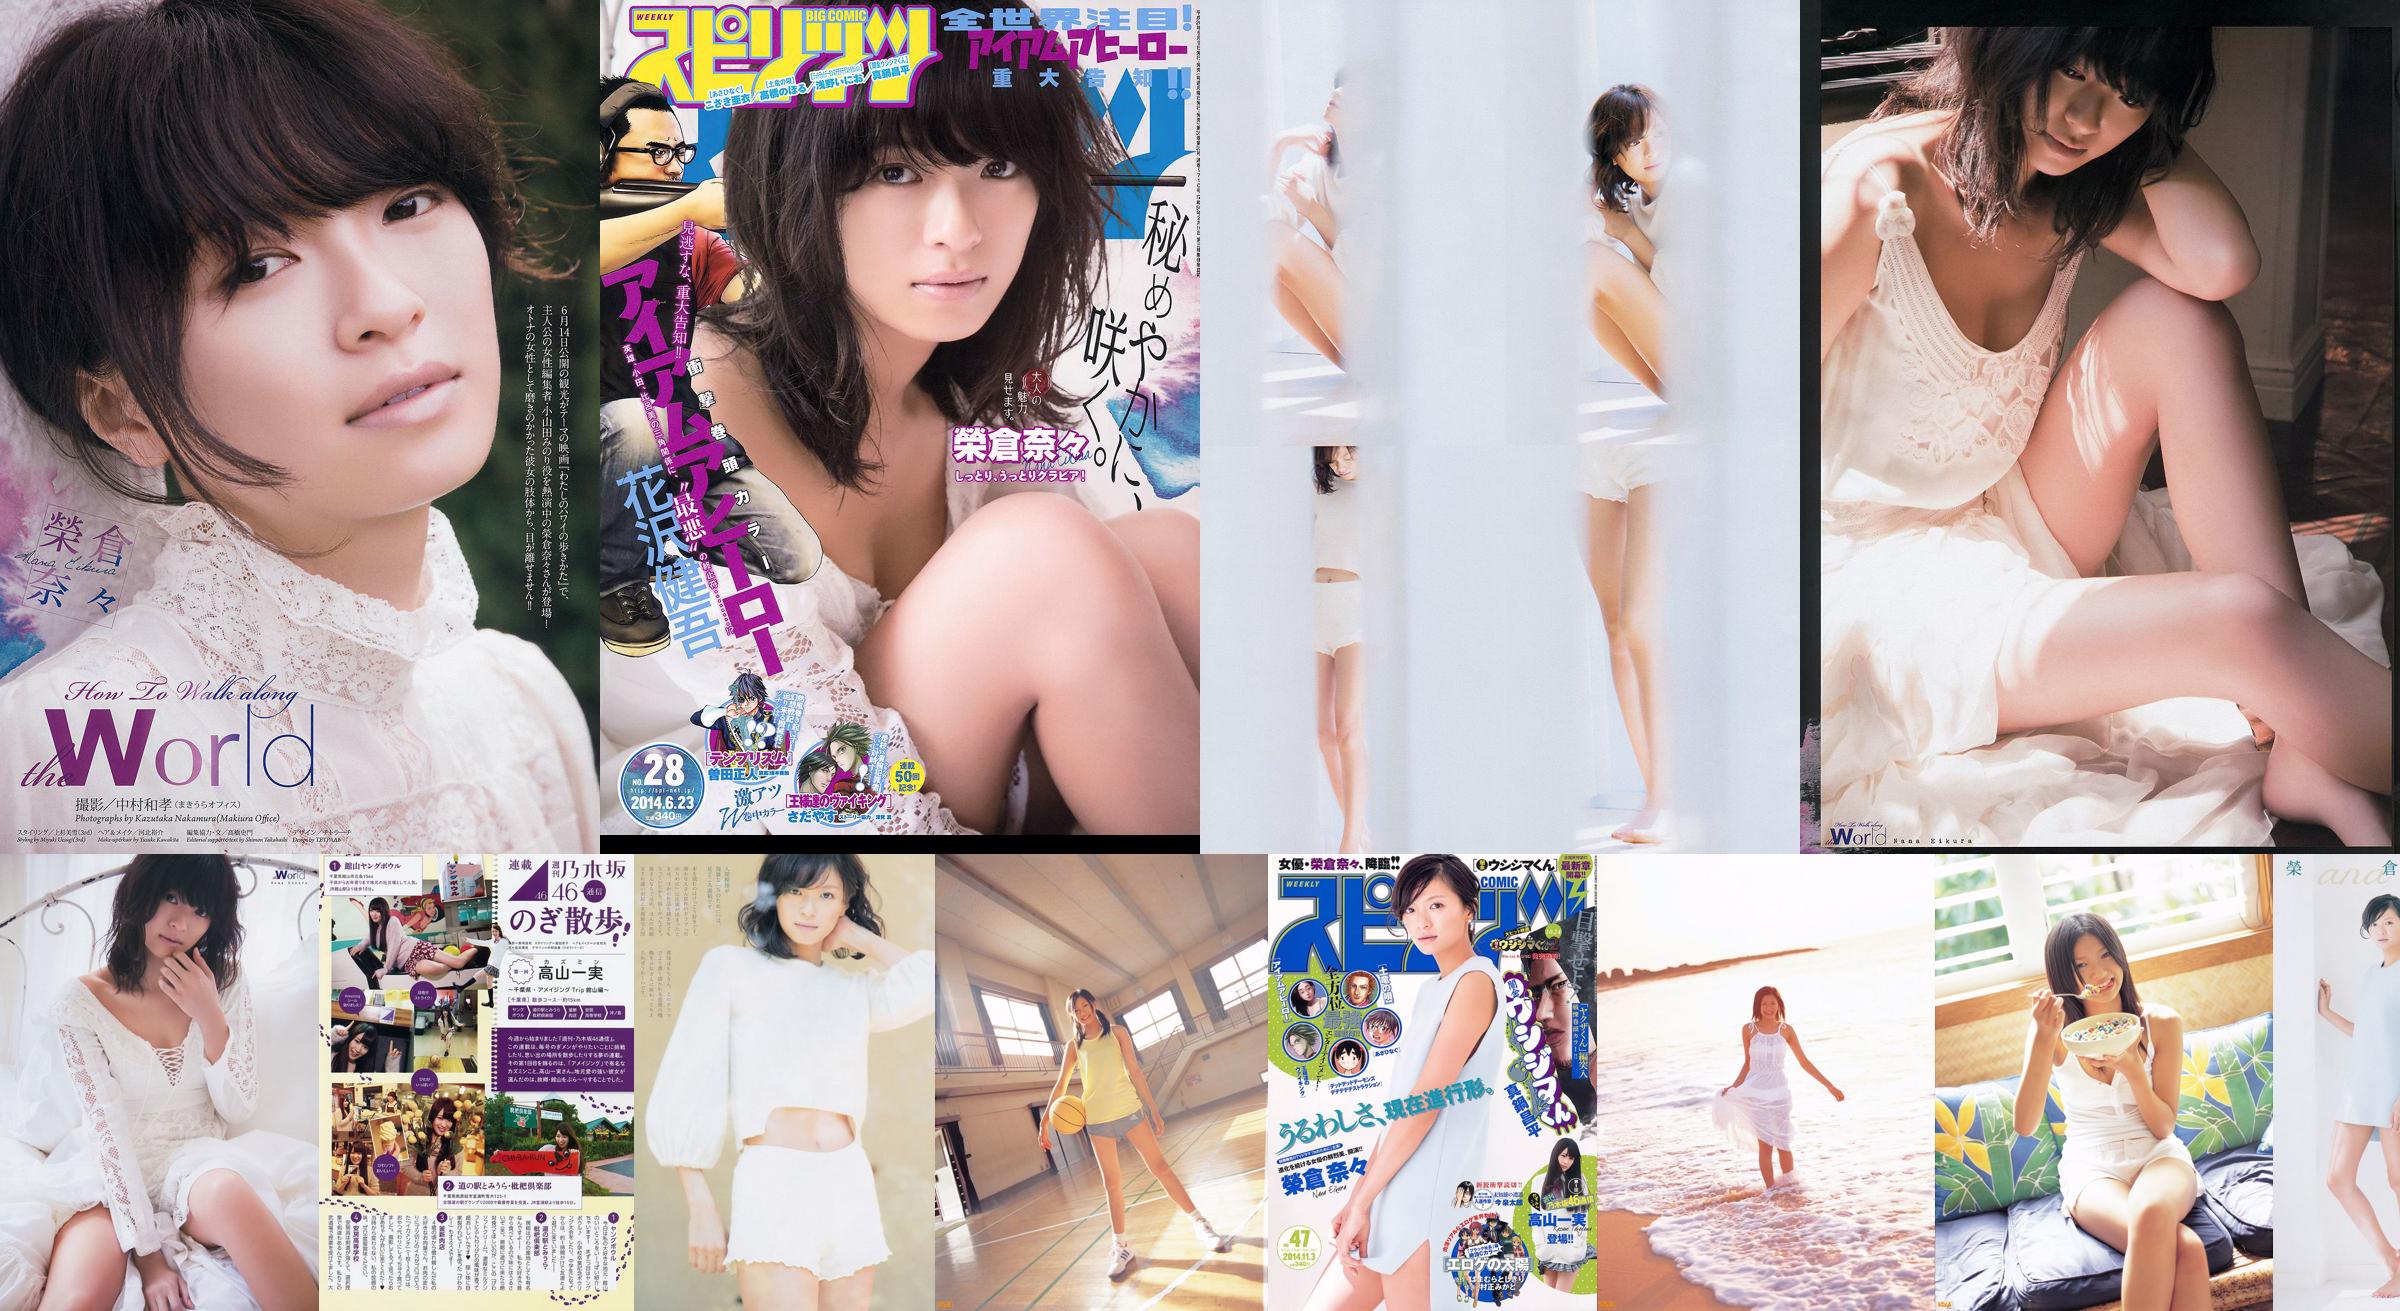 [Weekly Big Comic Spirits] Eikura Nana 2014 No.47 Photo Magazine No.511d9f Page 2